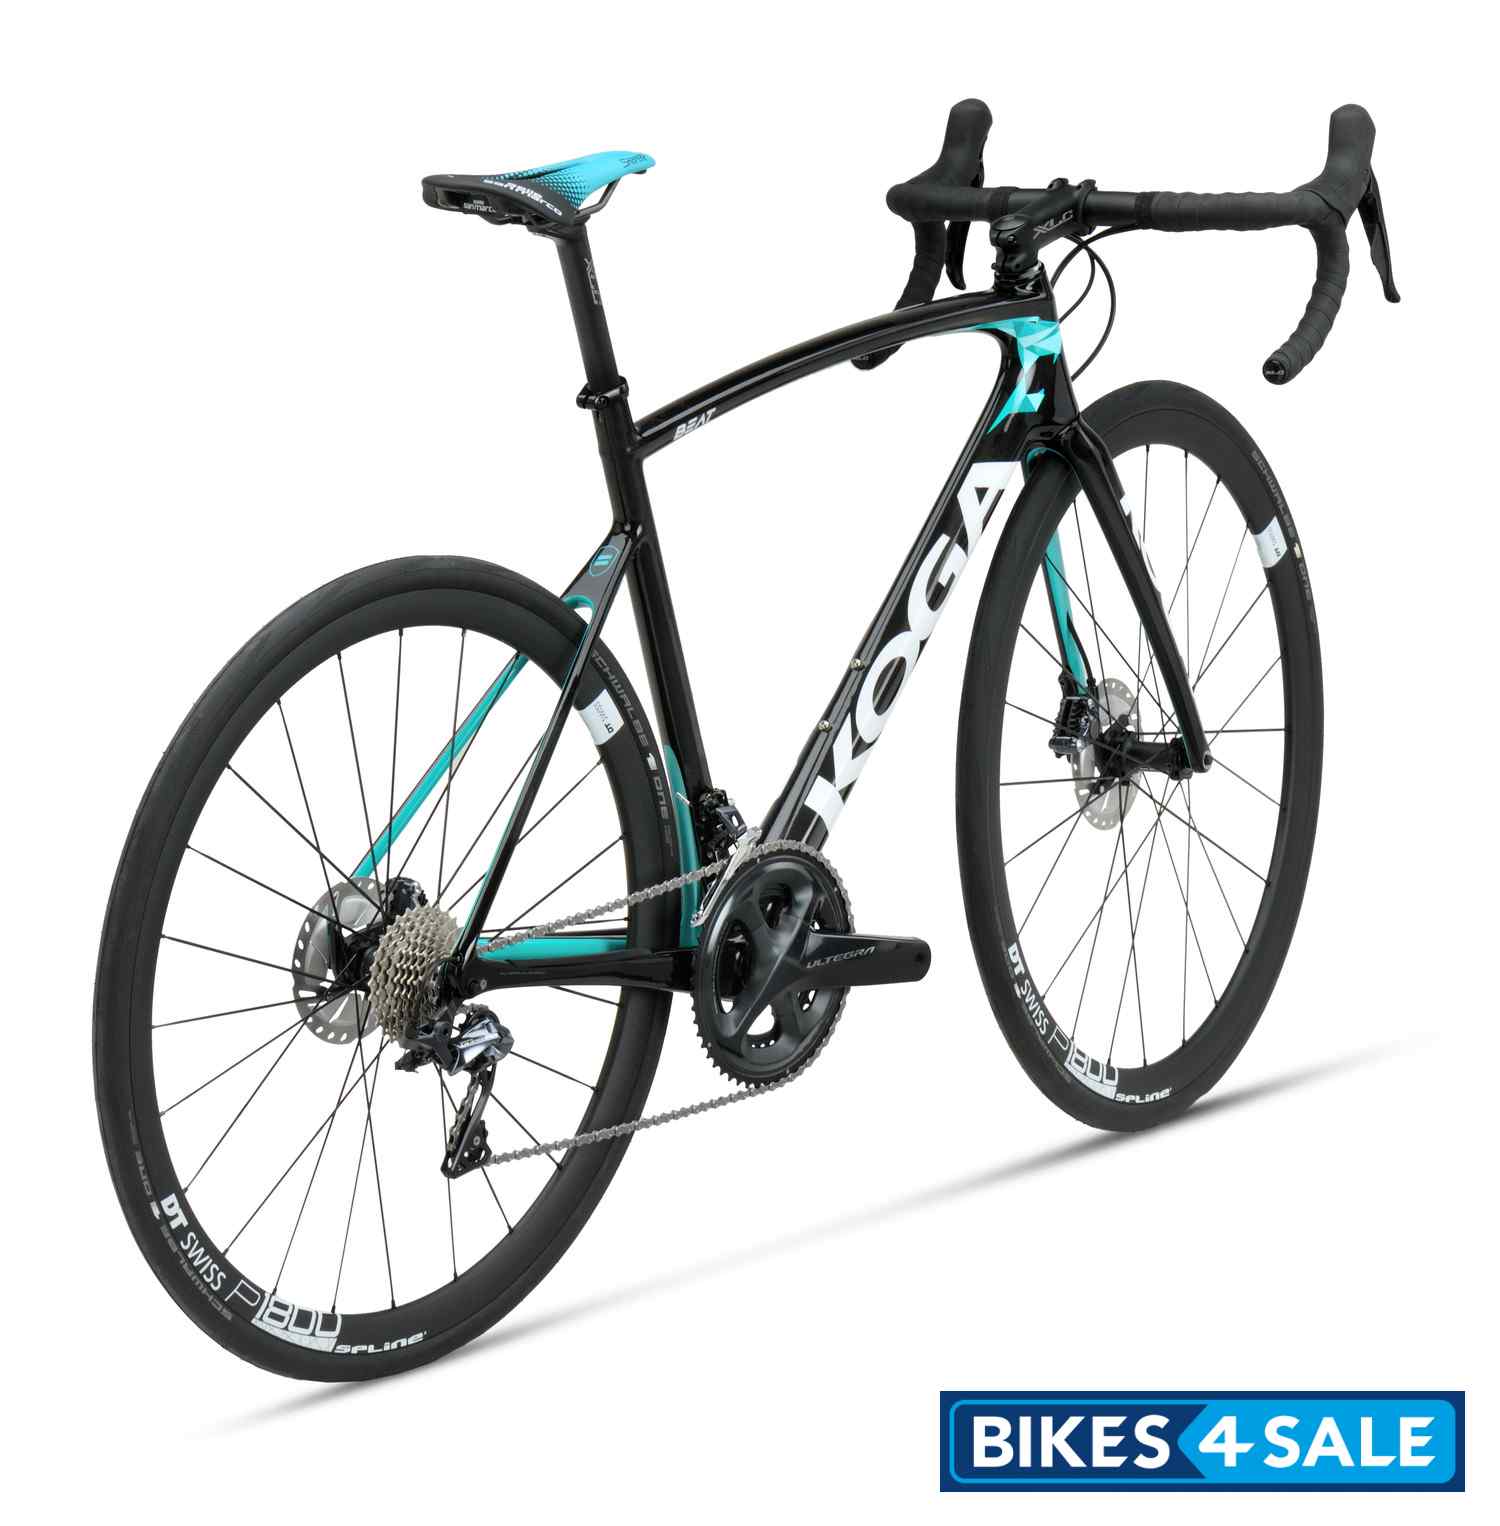 Koga Kimera Premium 2021 Koga Kimera Premium Beat Bicycle Price Review Specs And Features Bikes4sale